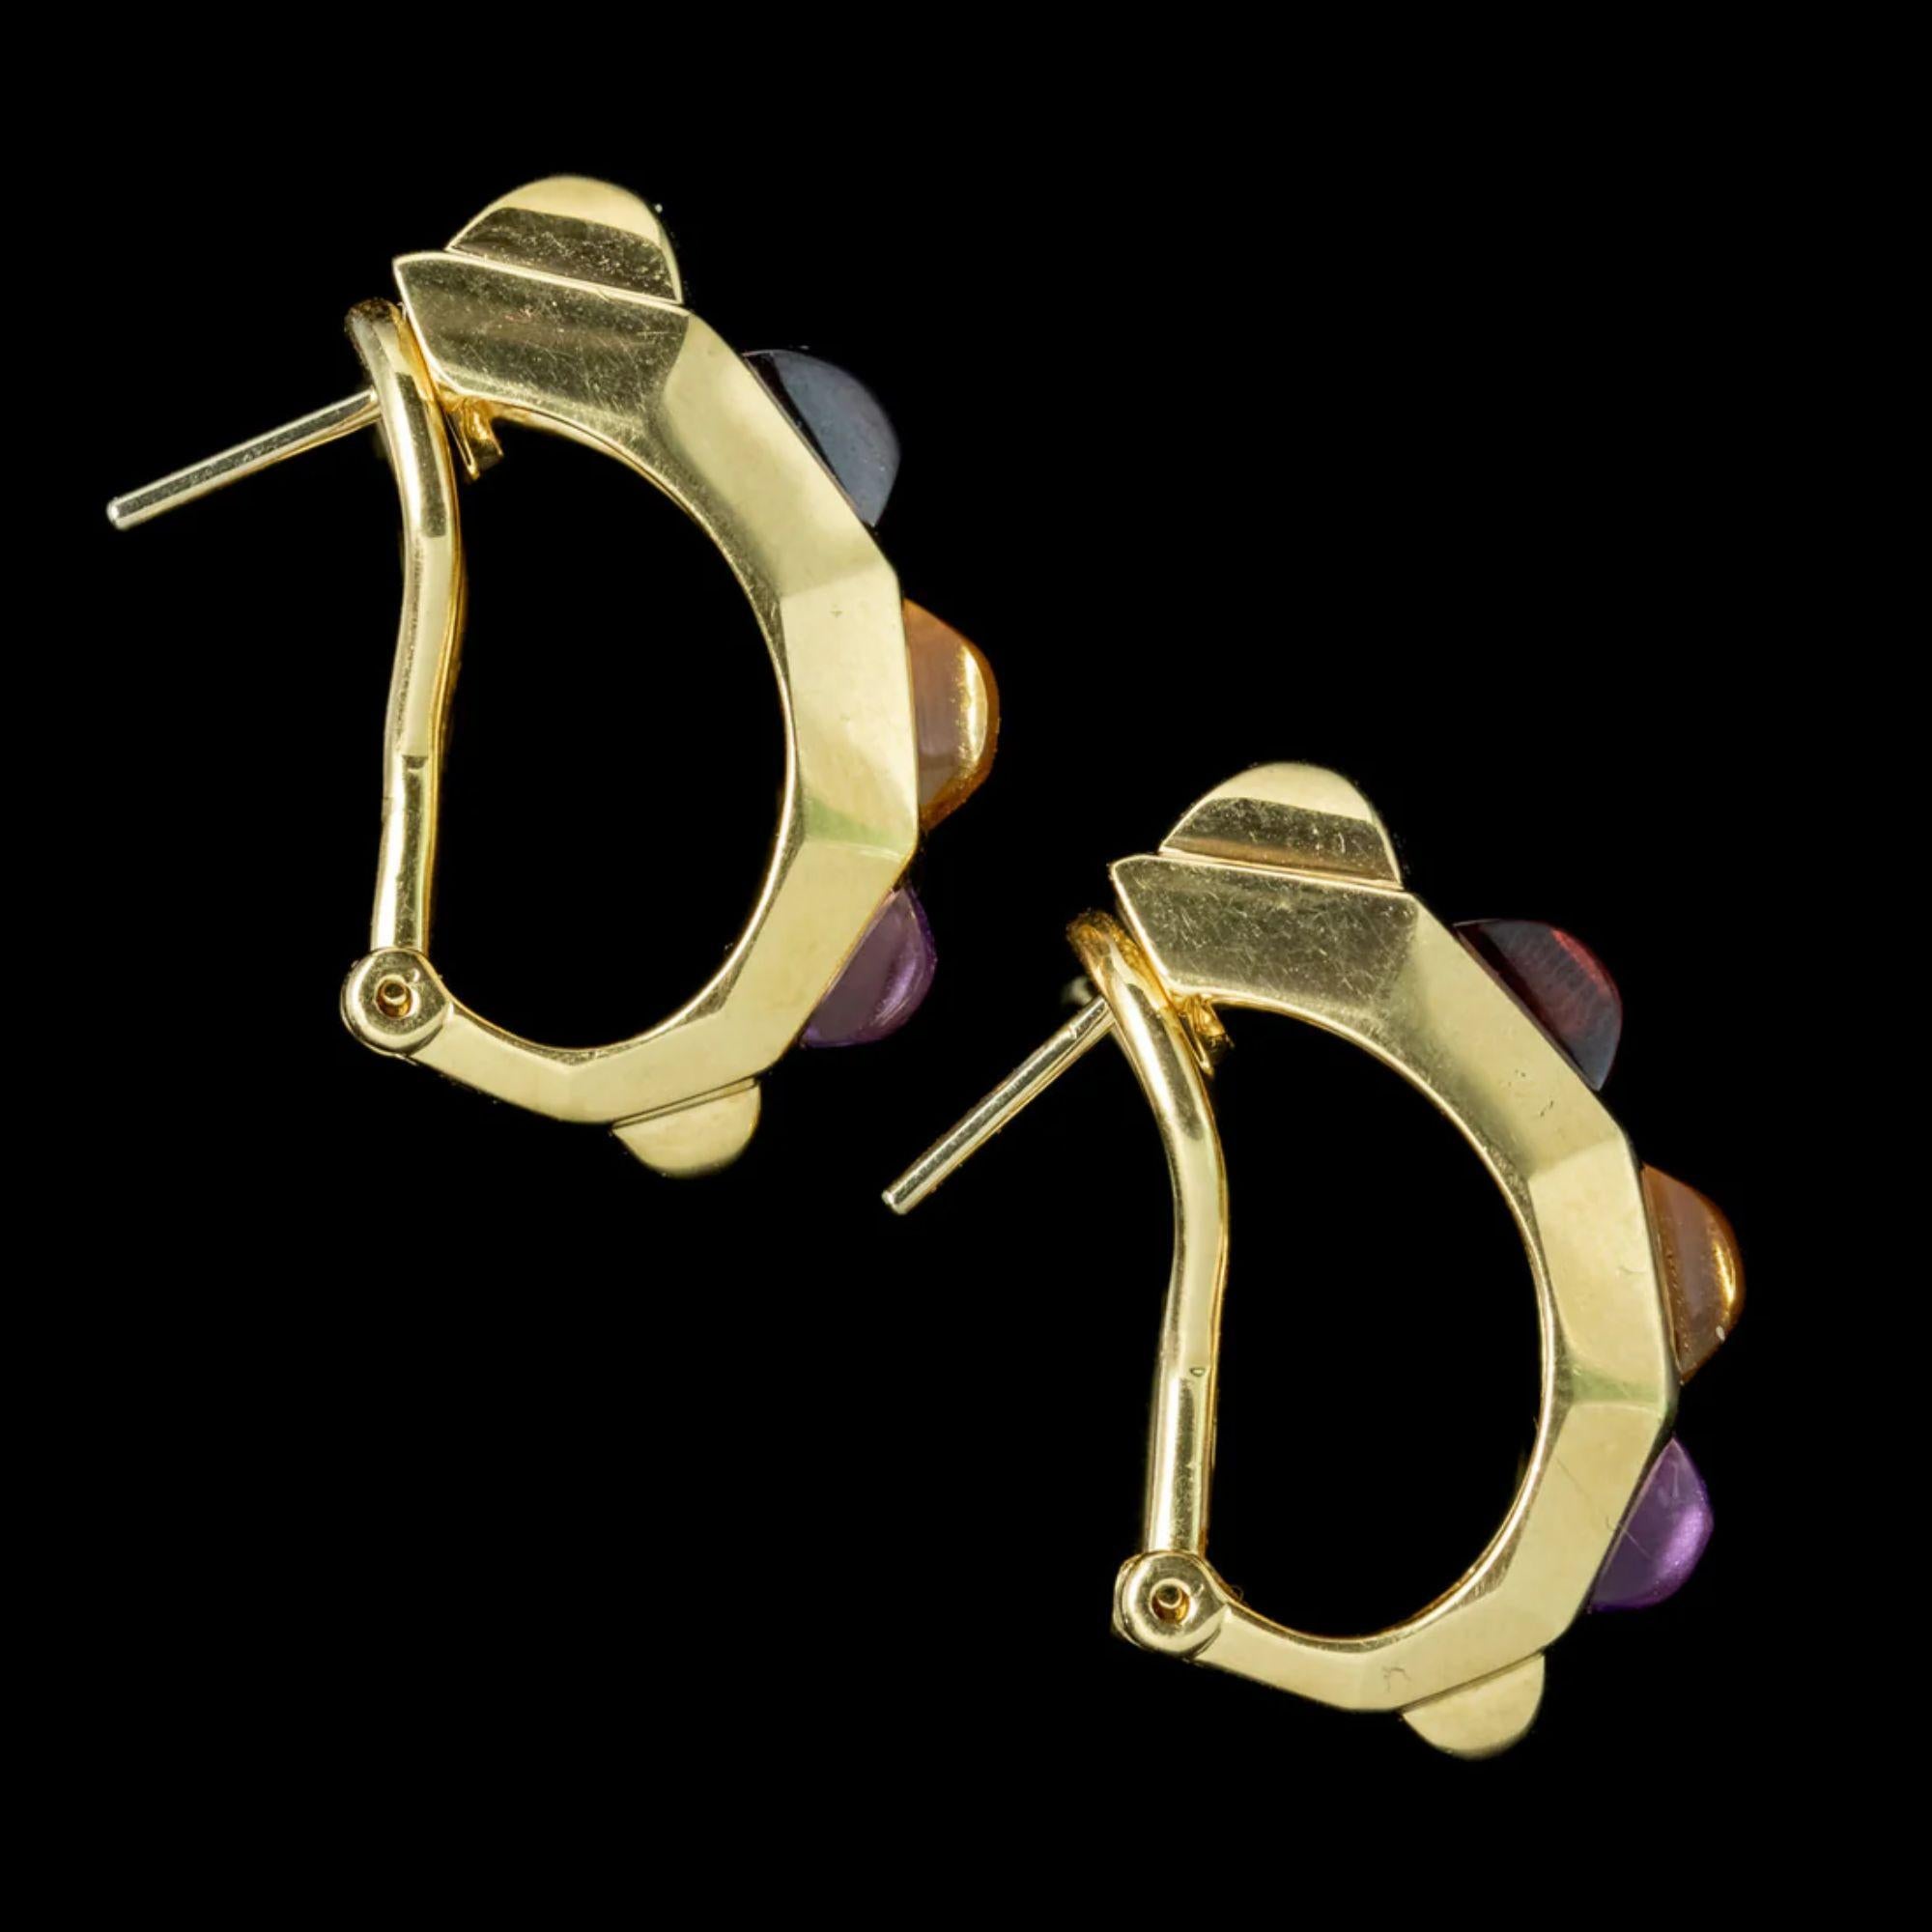 Vintage Amethyst Citrine Garnet Half Hoop Earrings in 18 Carat Gold In Good Condition For Sale In Kendal, GB